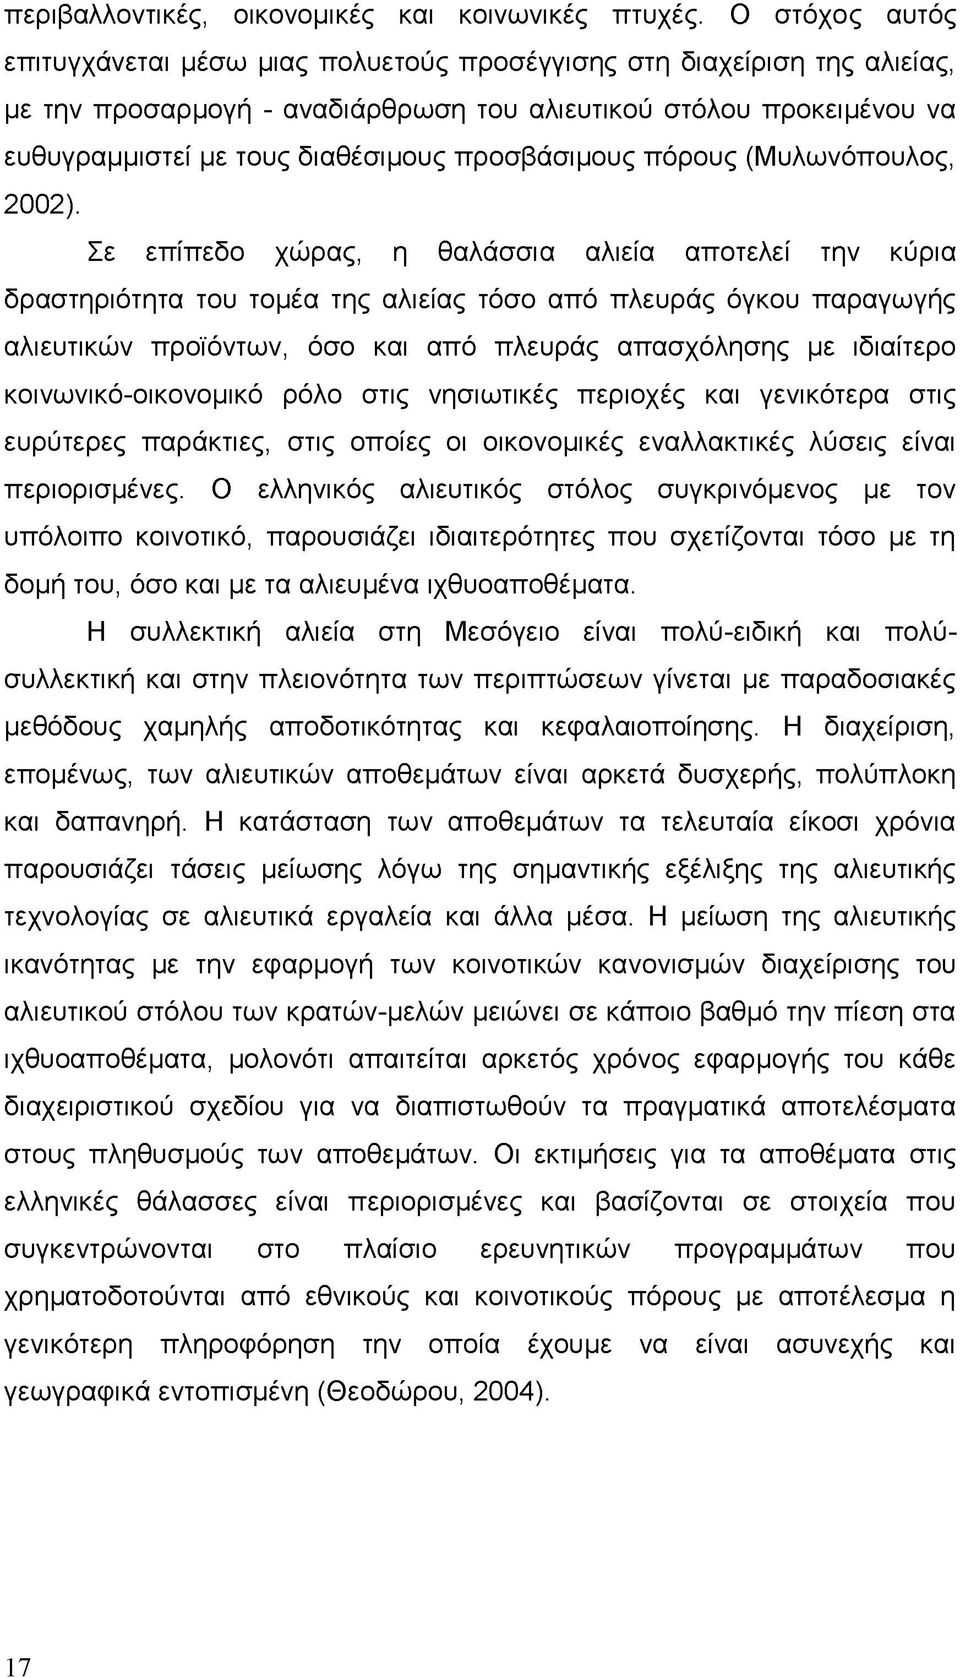 προσβάσιμους πόρους (Μυλωνόπουλος, 2002).